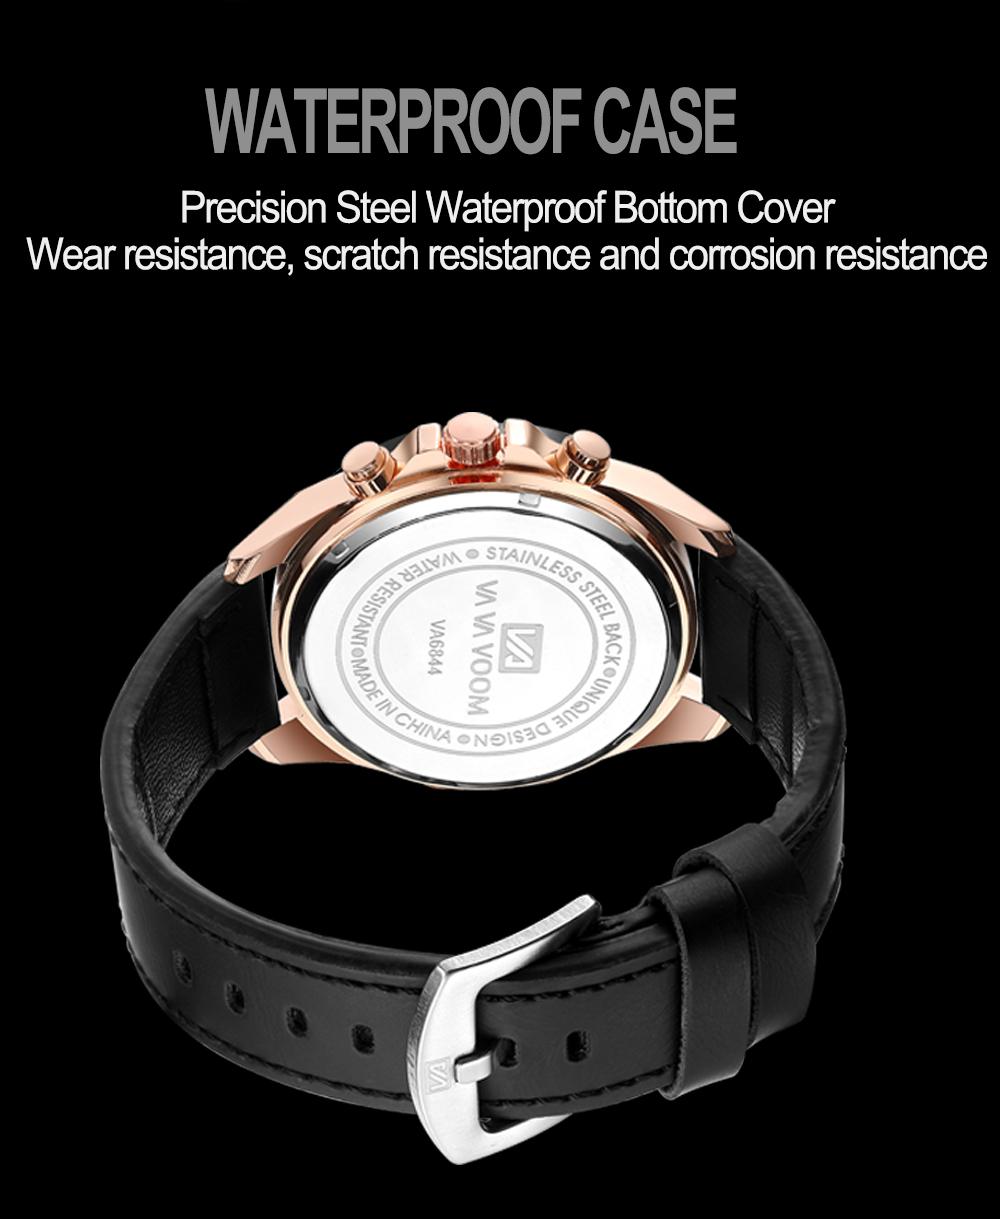 ข้อมูลประกอบของ Riches Mall RW198 นาฬิกาผู้ชาย นาฬิกา วินเทจ ผู้ชาย นาฬิกาข้อมือผู้หญิง นาฬิกาข้อมือ นาฬิกาควอตซ์ Watch นาฬิกาสายหนัง